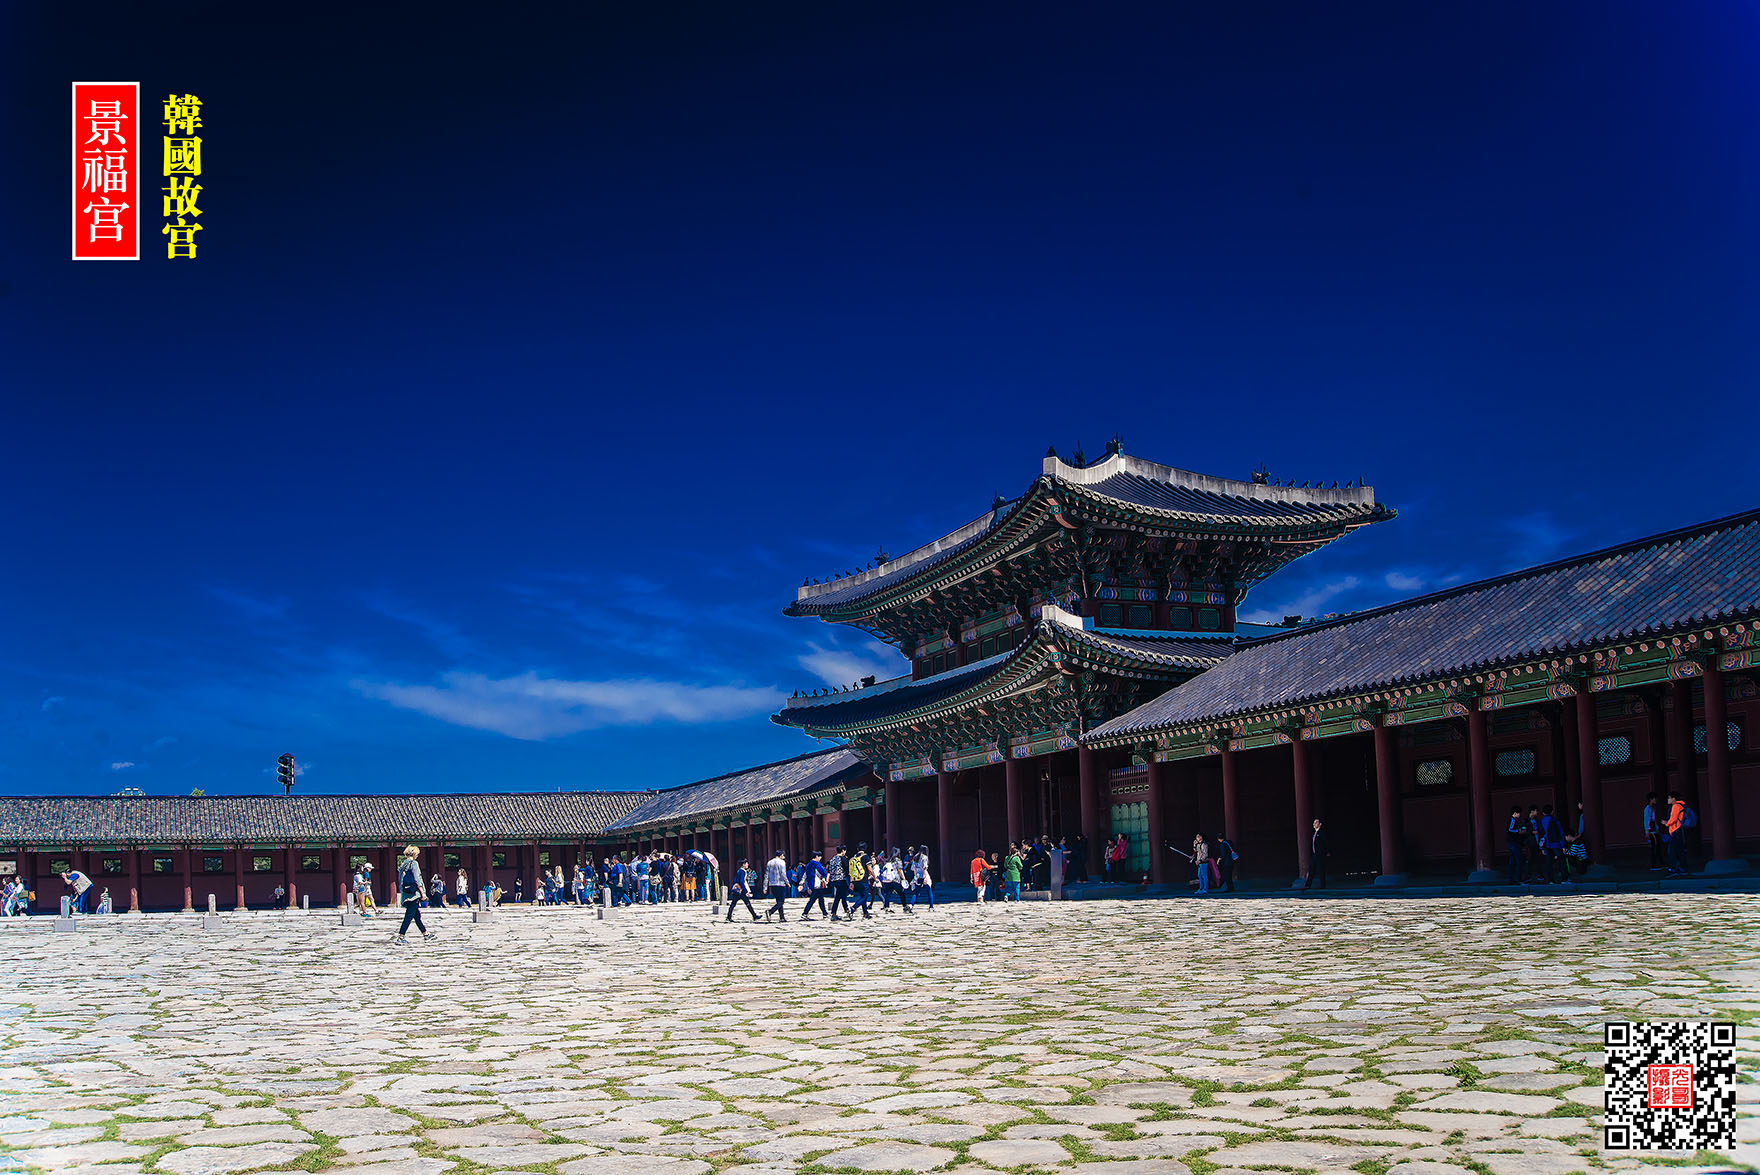 韩国景福宫（相当于韩国的故宫，很多宫殿的名字都与故宫里的一致） - 走拍小青年 - 图虫网 - 优质摄影师交流社区